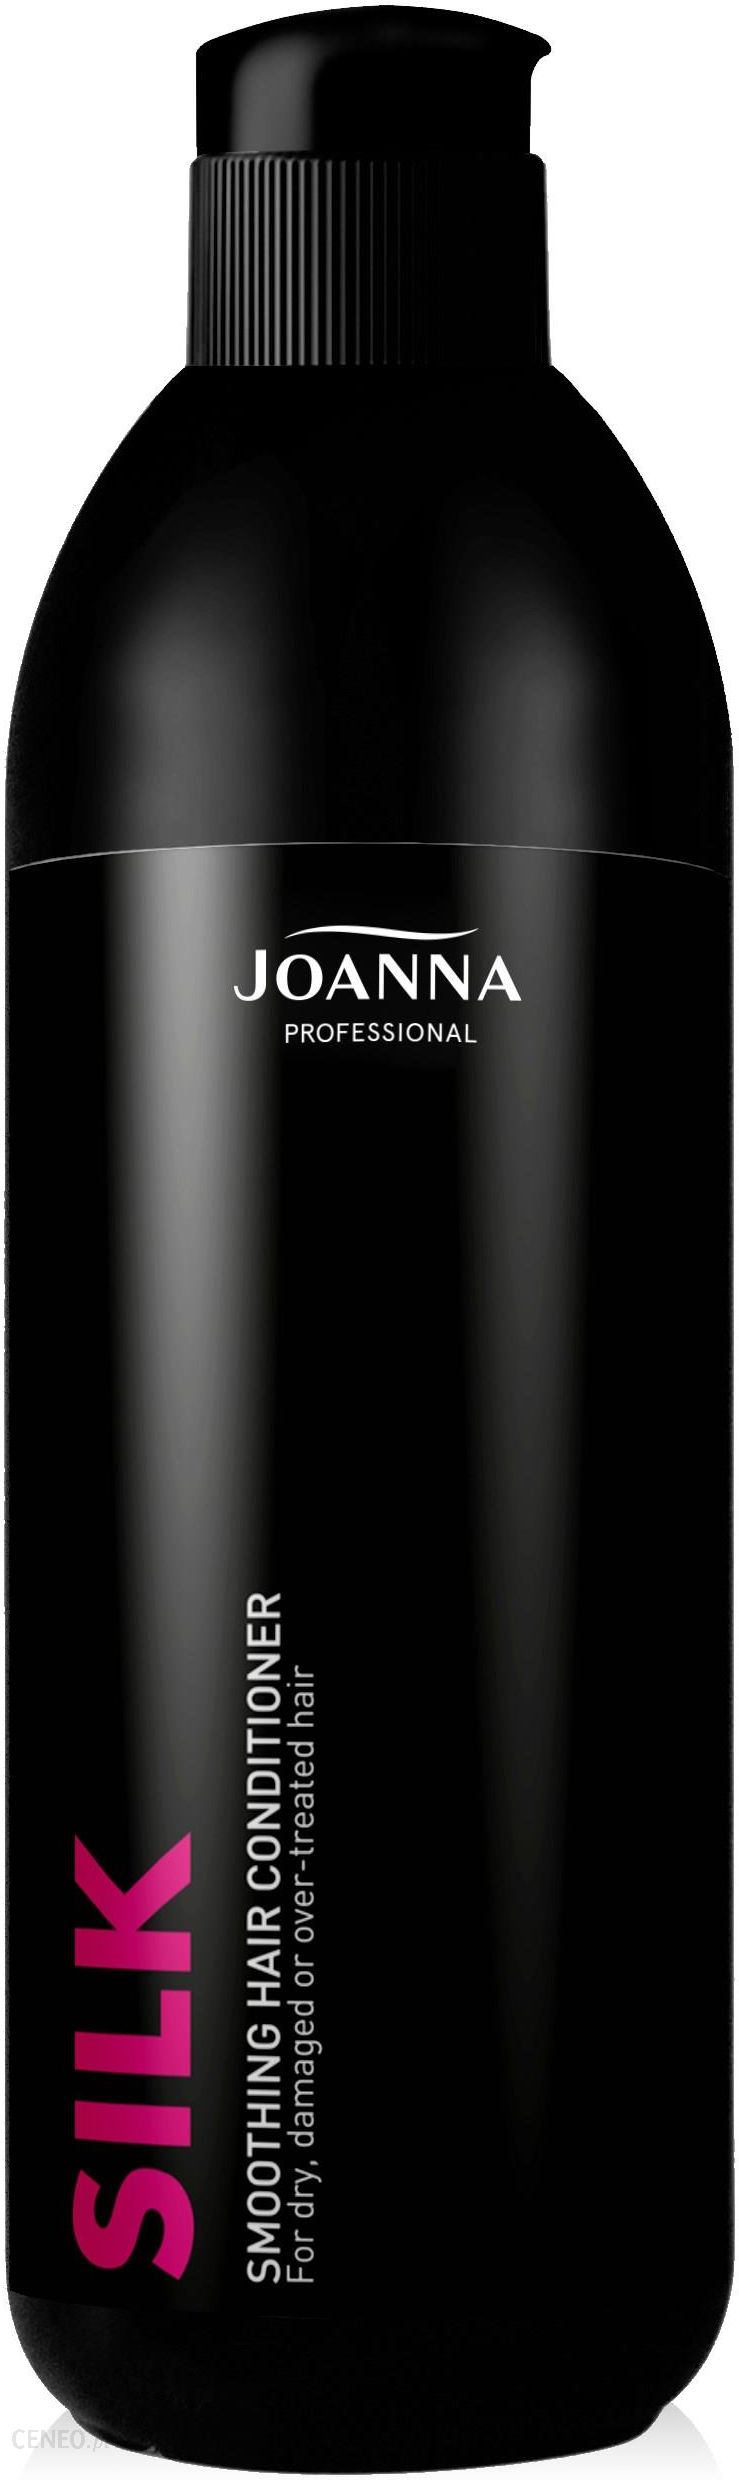 Joanna Professional Silk Smoothing Hair Conditioner odżywka wygładzająca do włosów suchych i zniszczonych z jedwabiem 500g